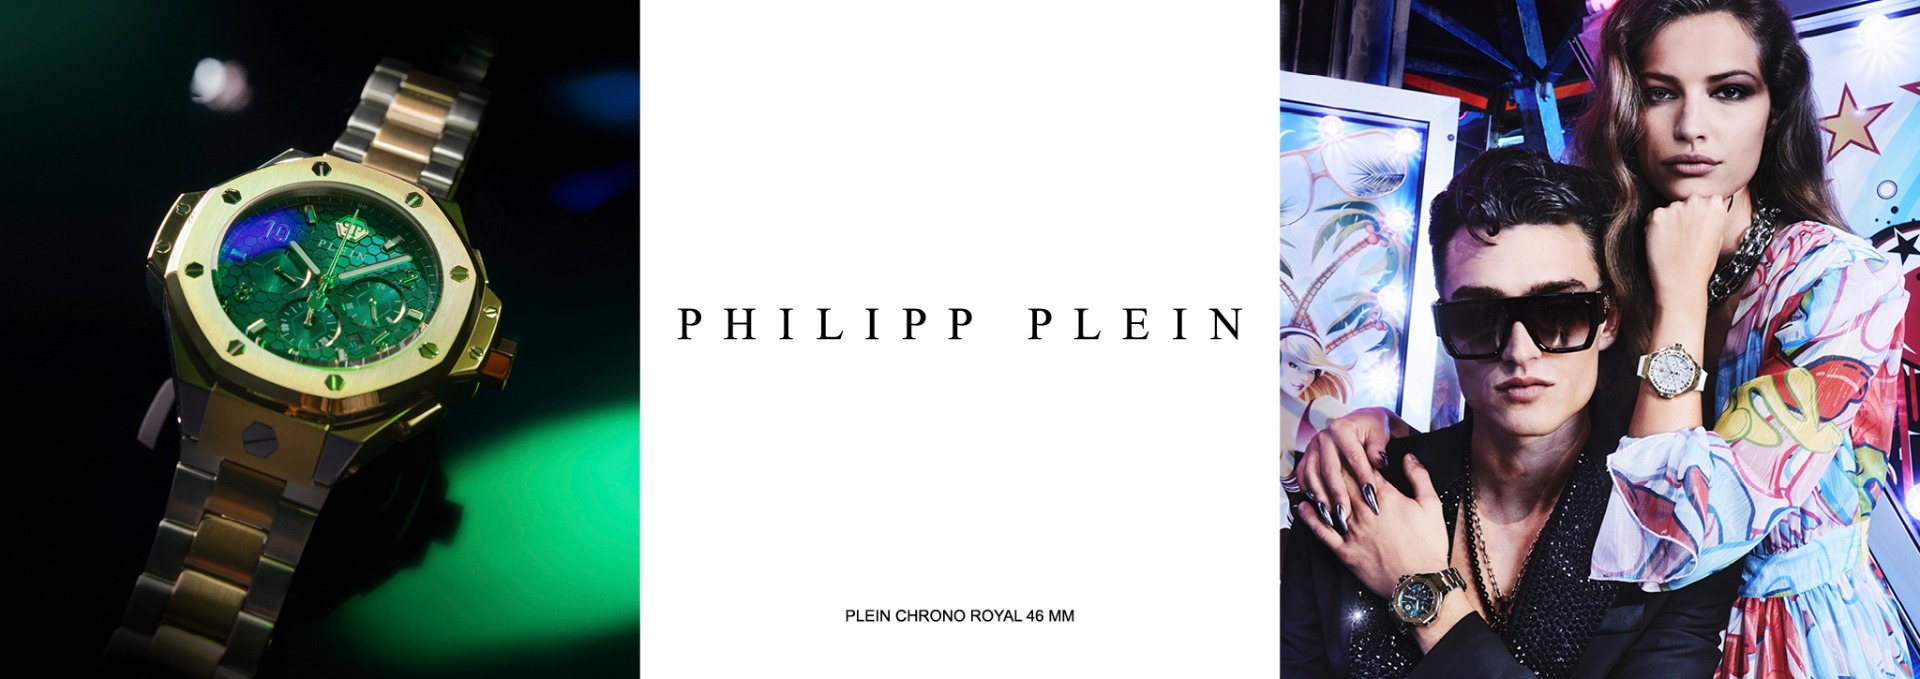 PHILIPP PLEIN, PLEIN CHRONO ROYAL 46 MM